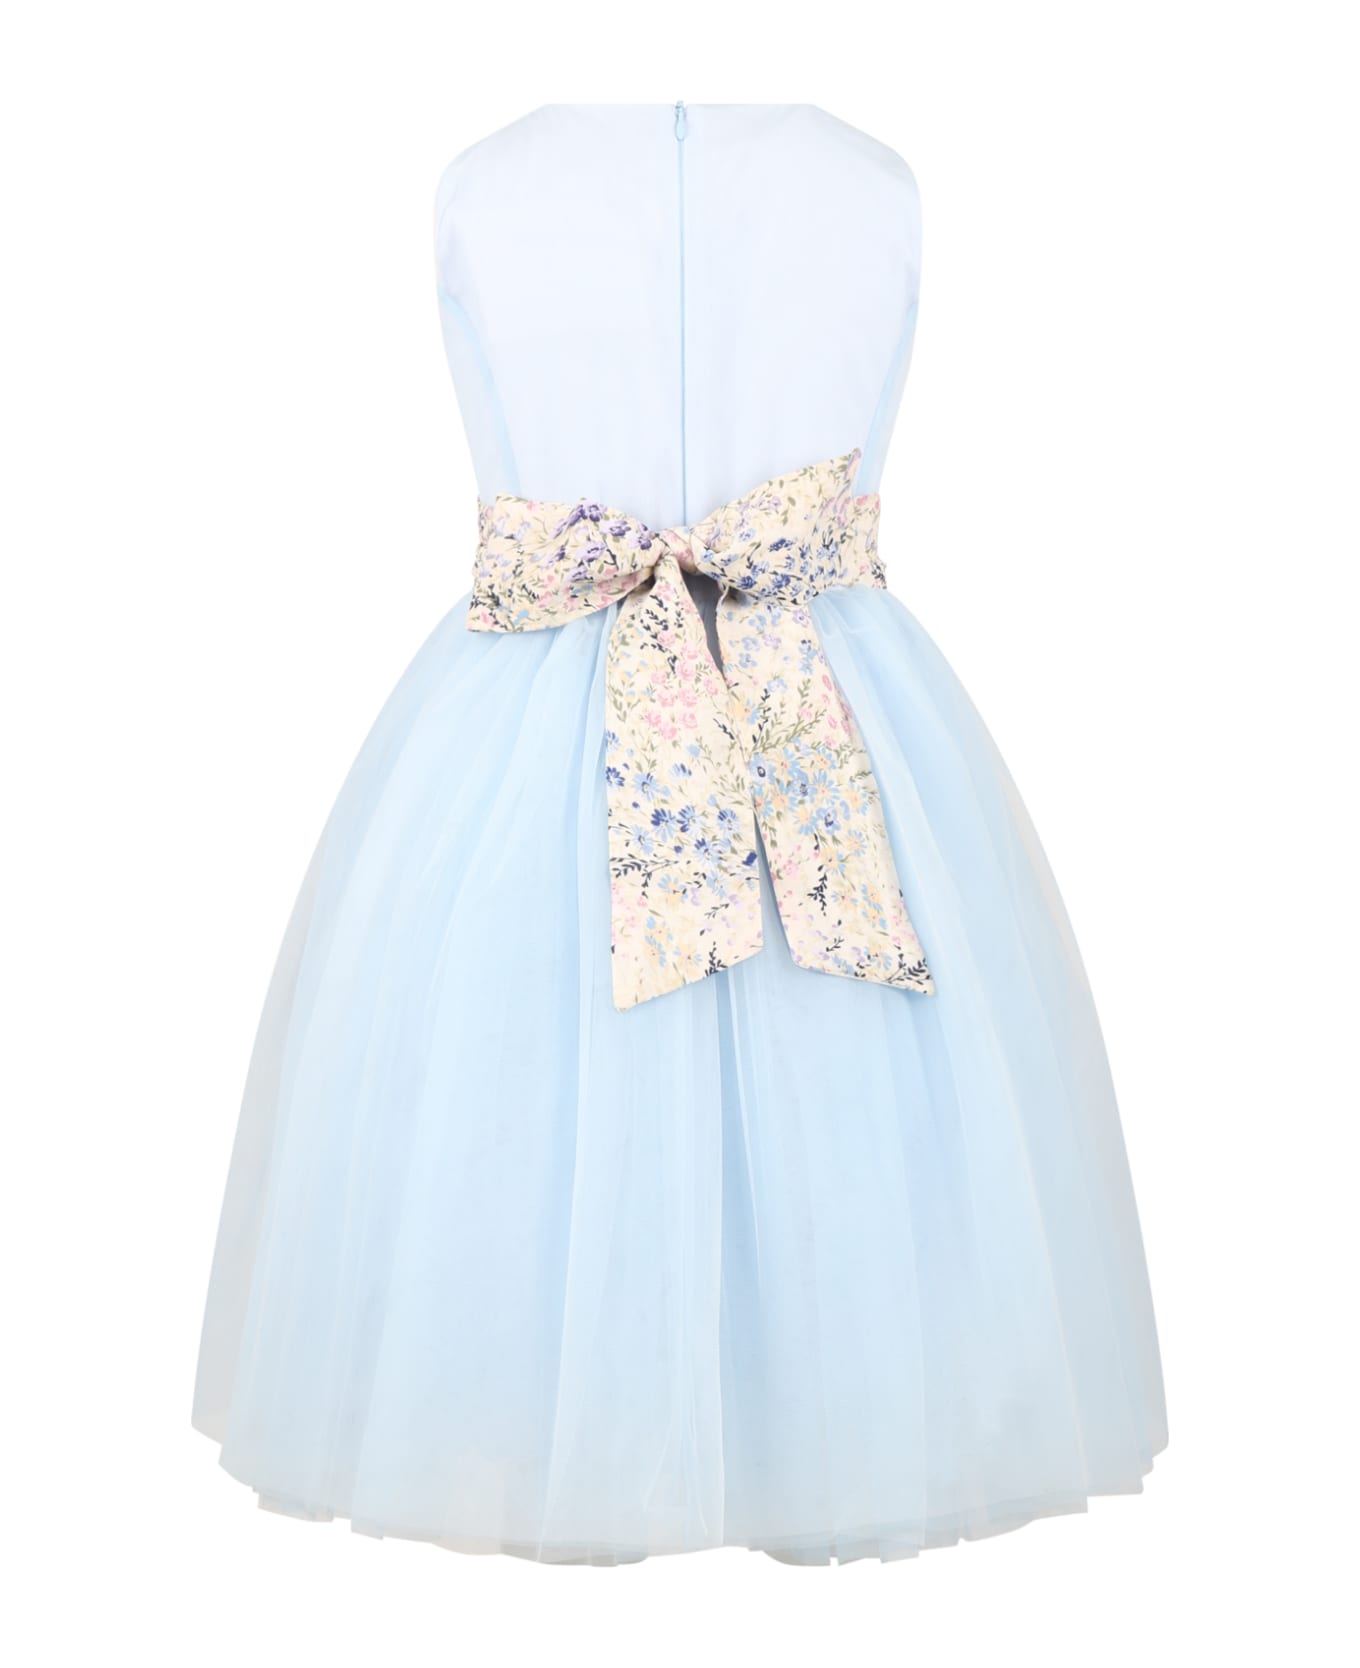 Simonetta Light-blue Dress For Girl With Tulle Skirt - Light Blue